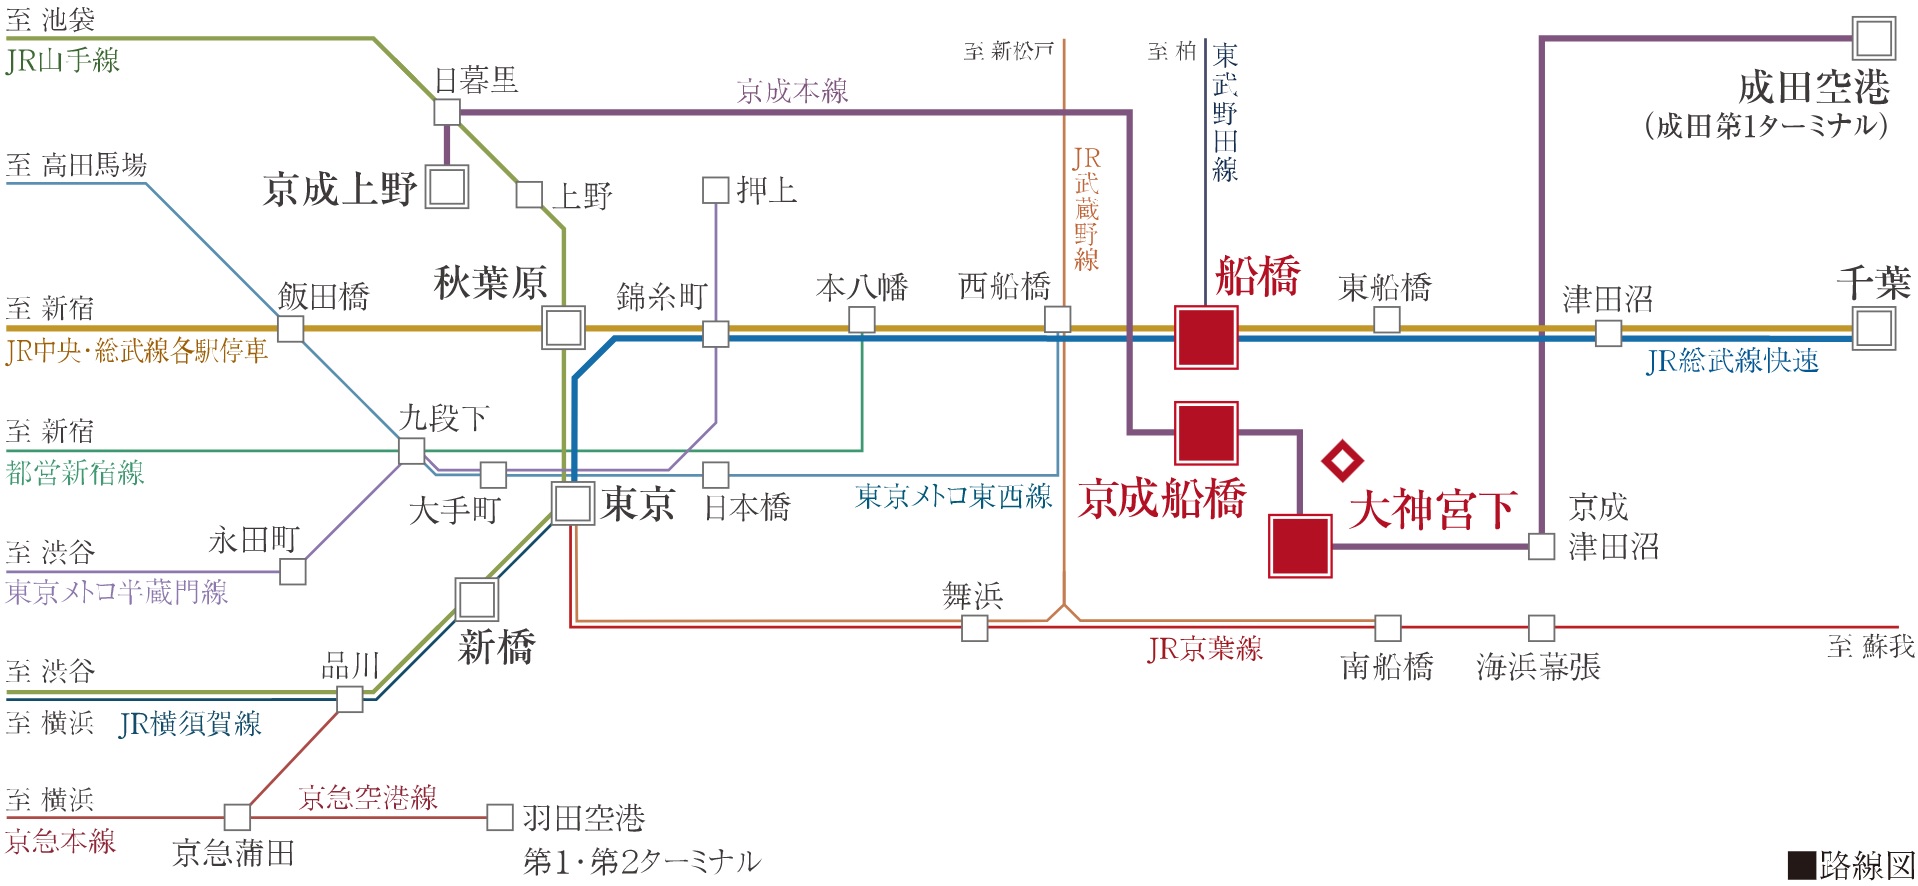 都心まで直線約20km圏
JR「東京」駅へ直通26分〜30分（通勤時）